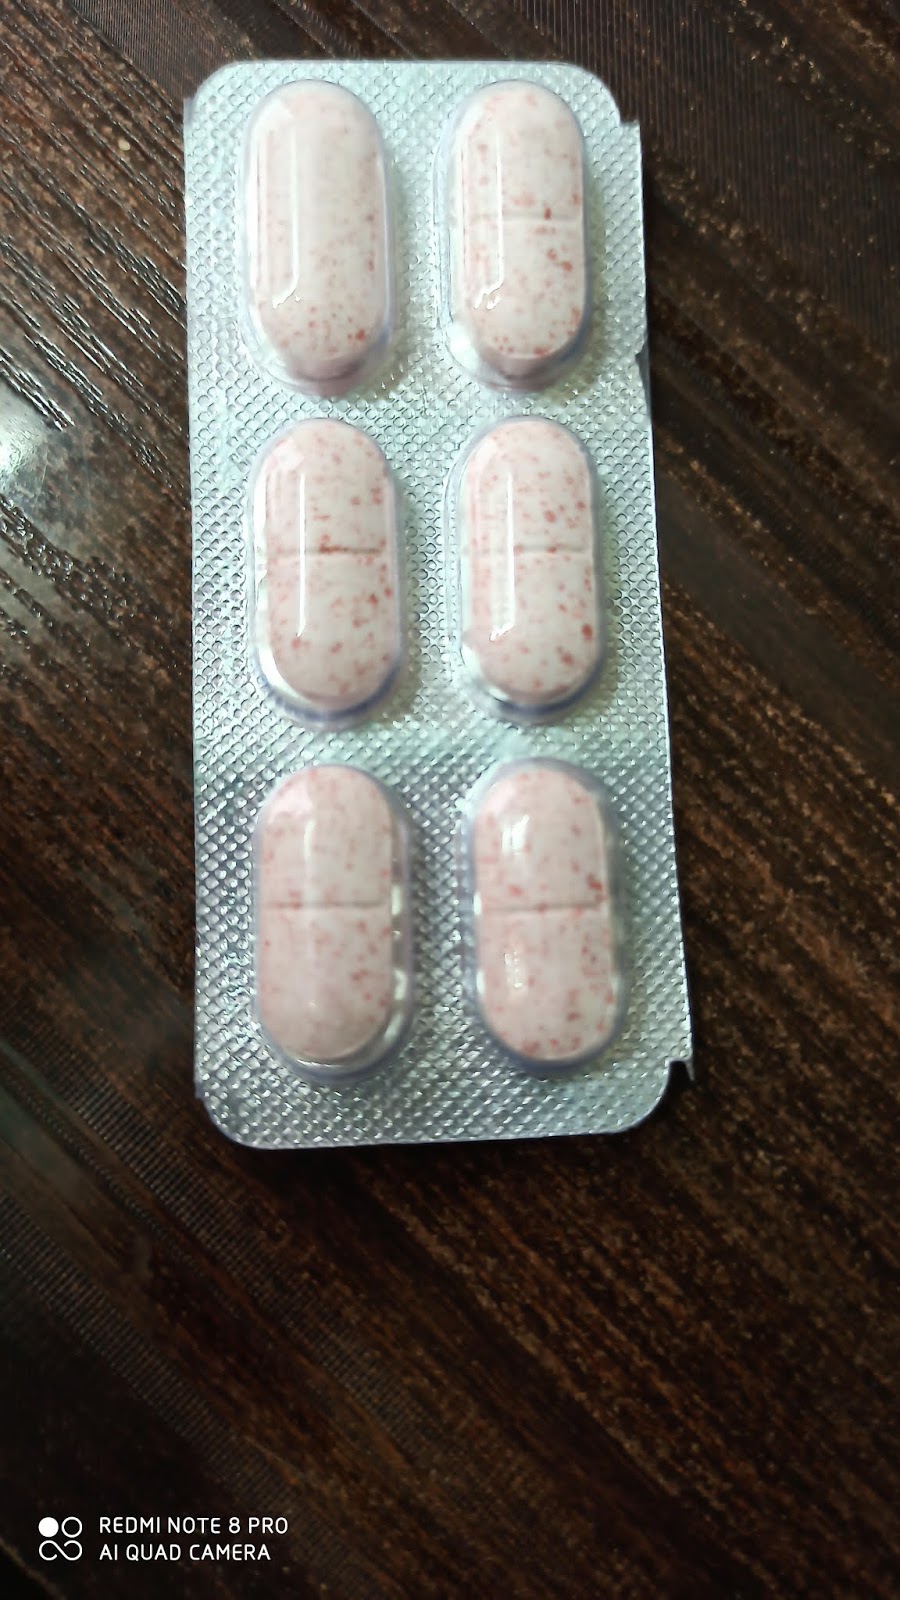 Diclofenac Sodium 50 Mg And Paracetamol 325 Mg Tablet Ip In Hindi